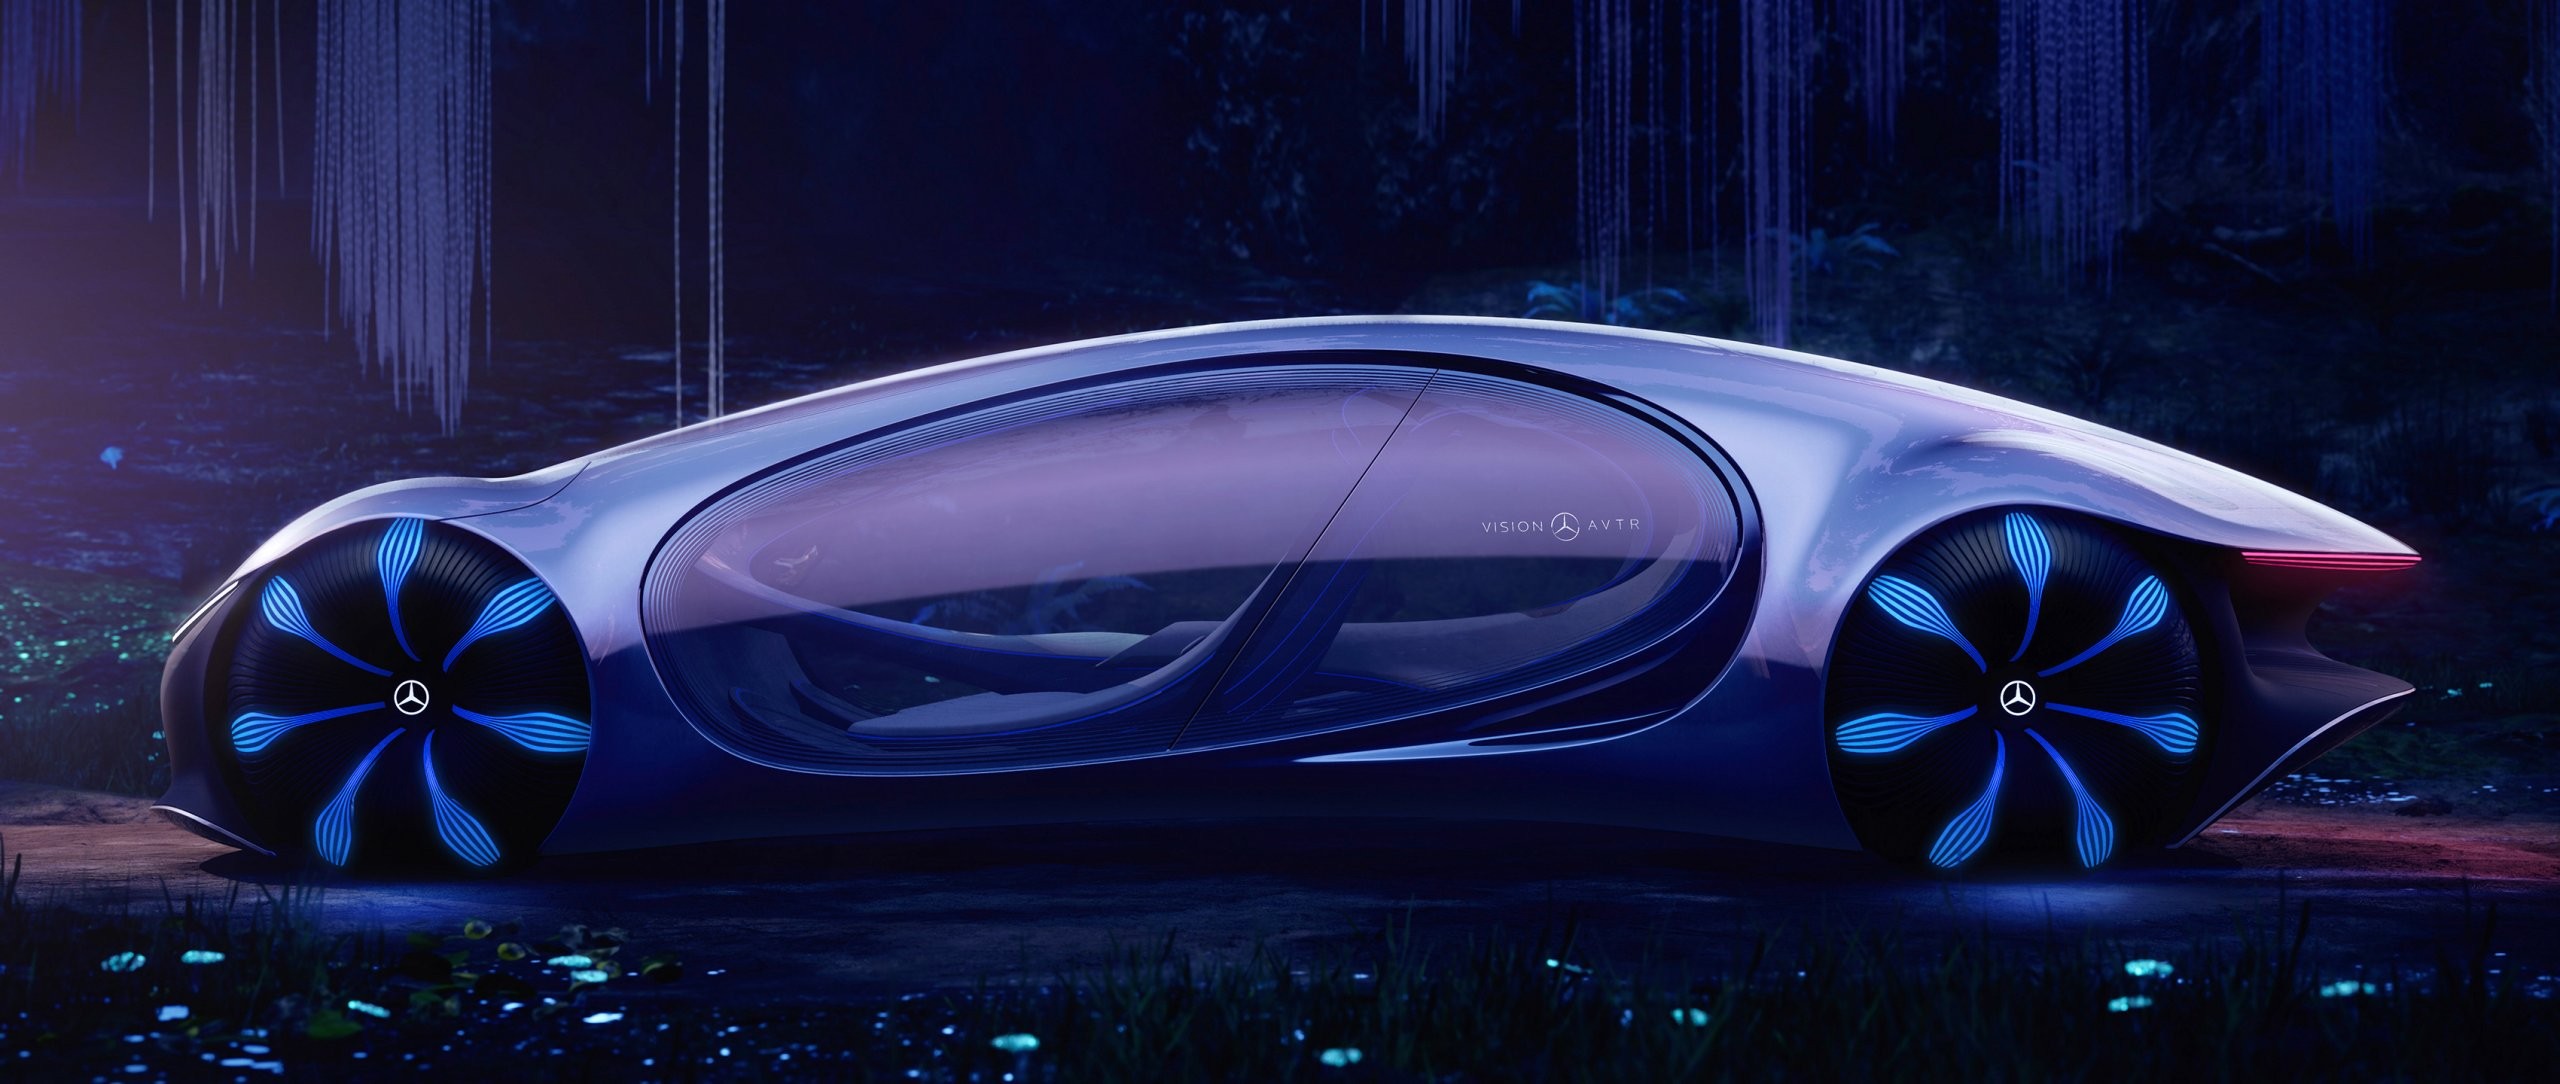 Mercedes-Benz revela carro sem volante inspirado no filme Avatar (Foto: Divulgação)